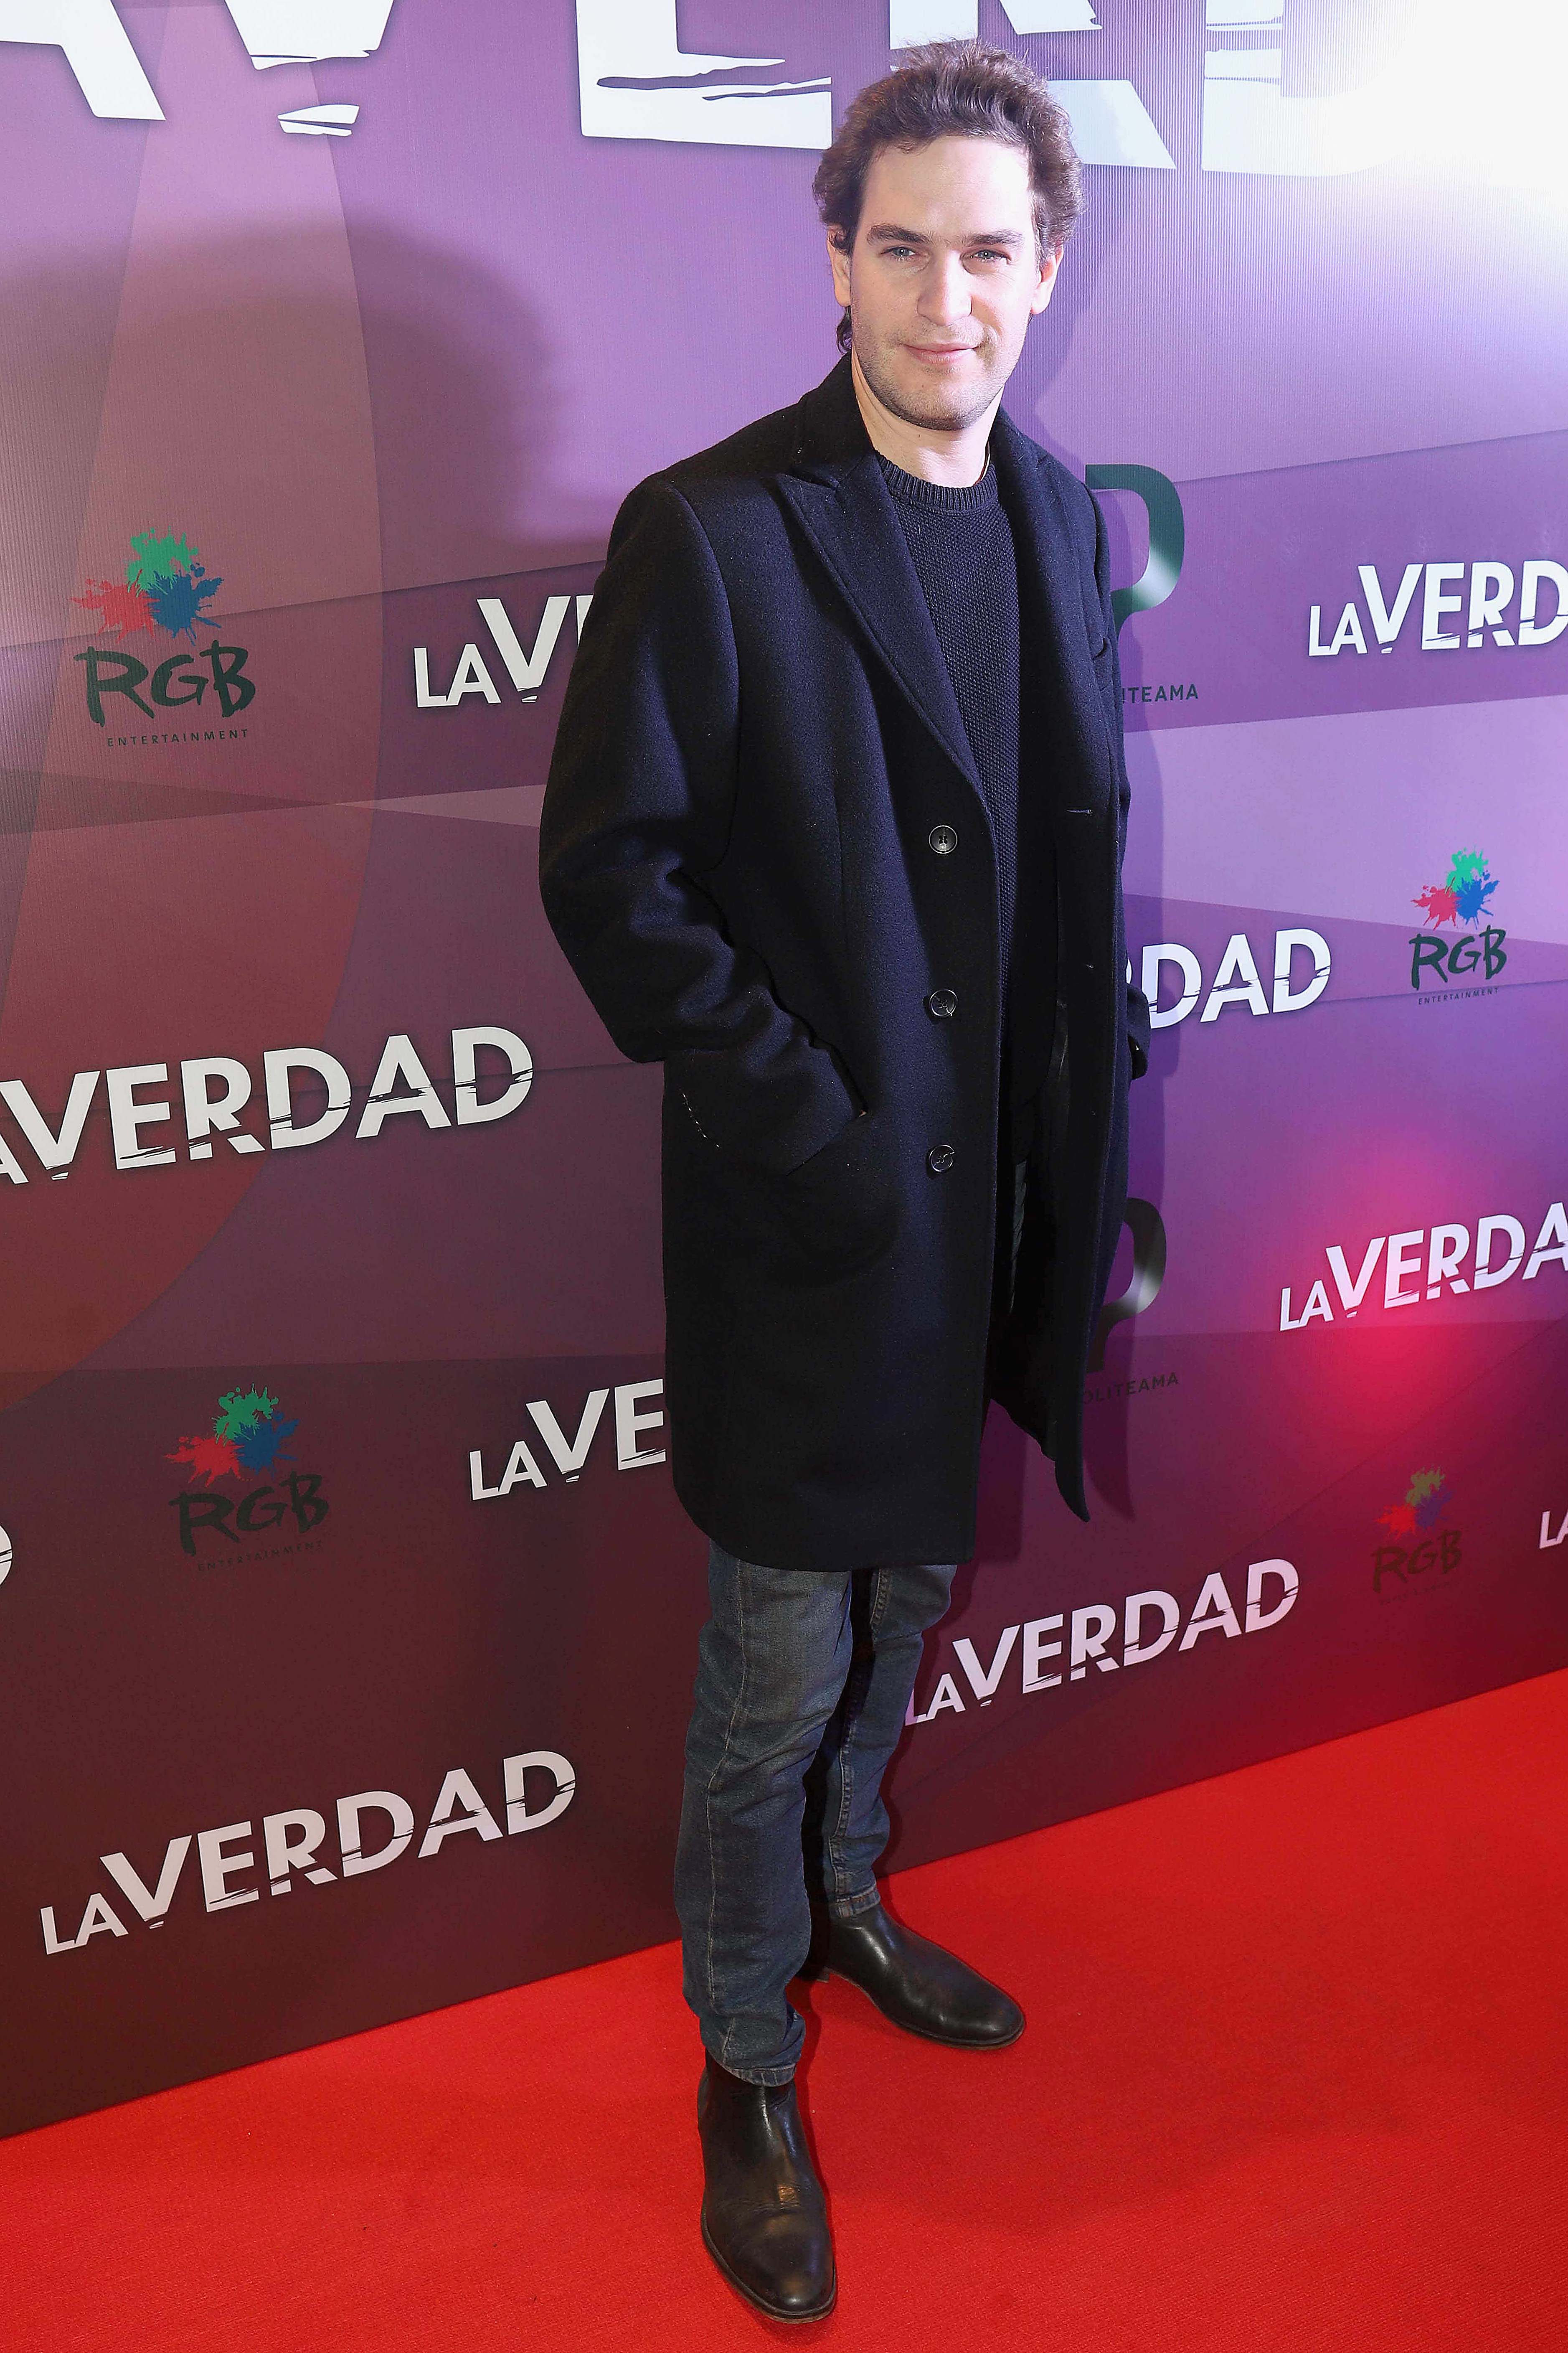 The actor Matías Mayer chose a black coat